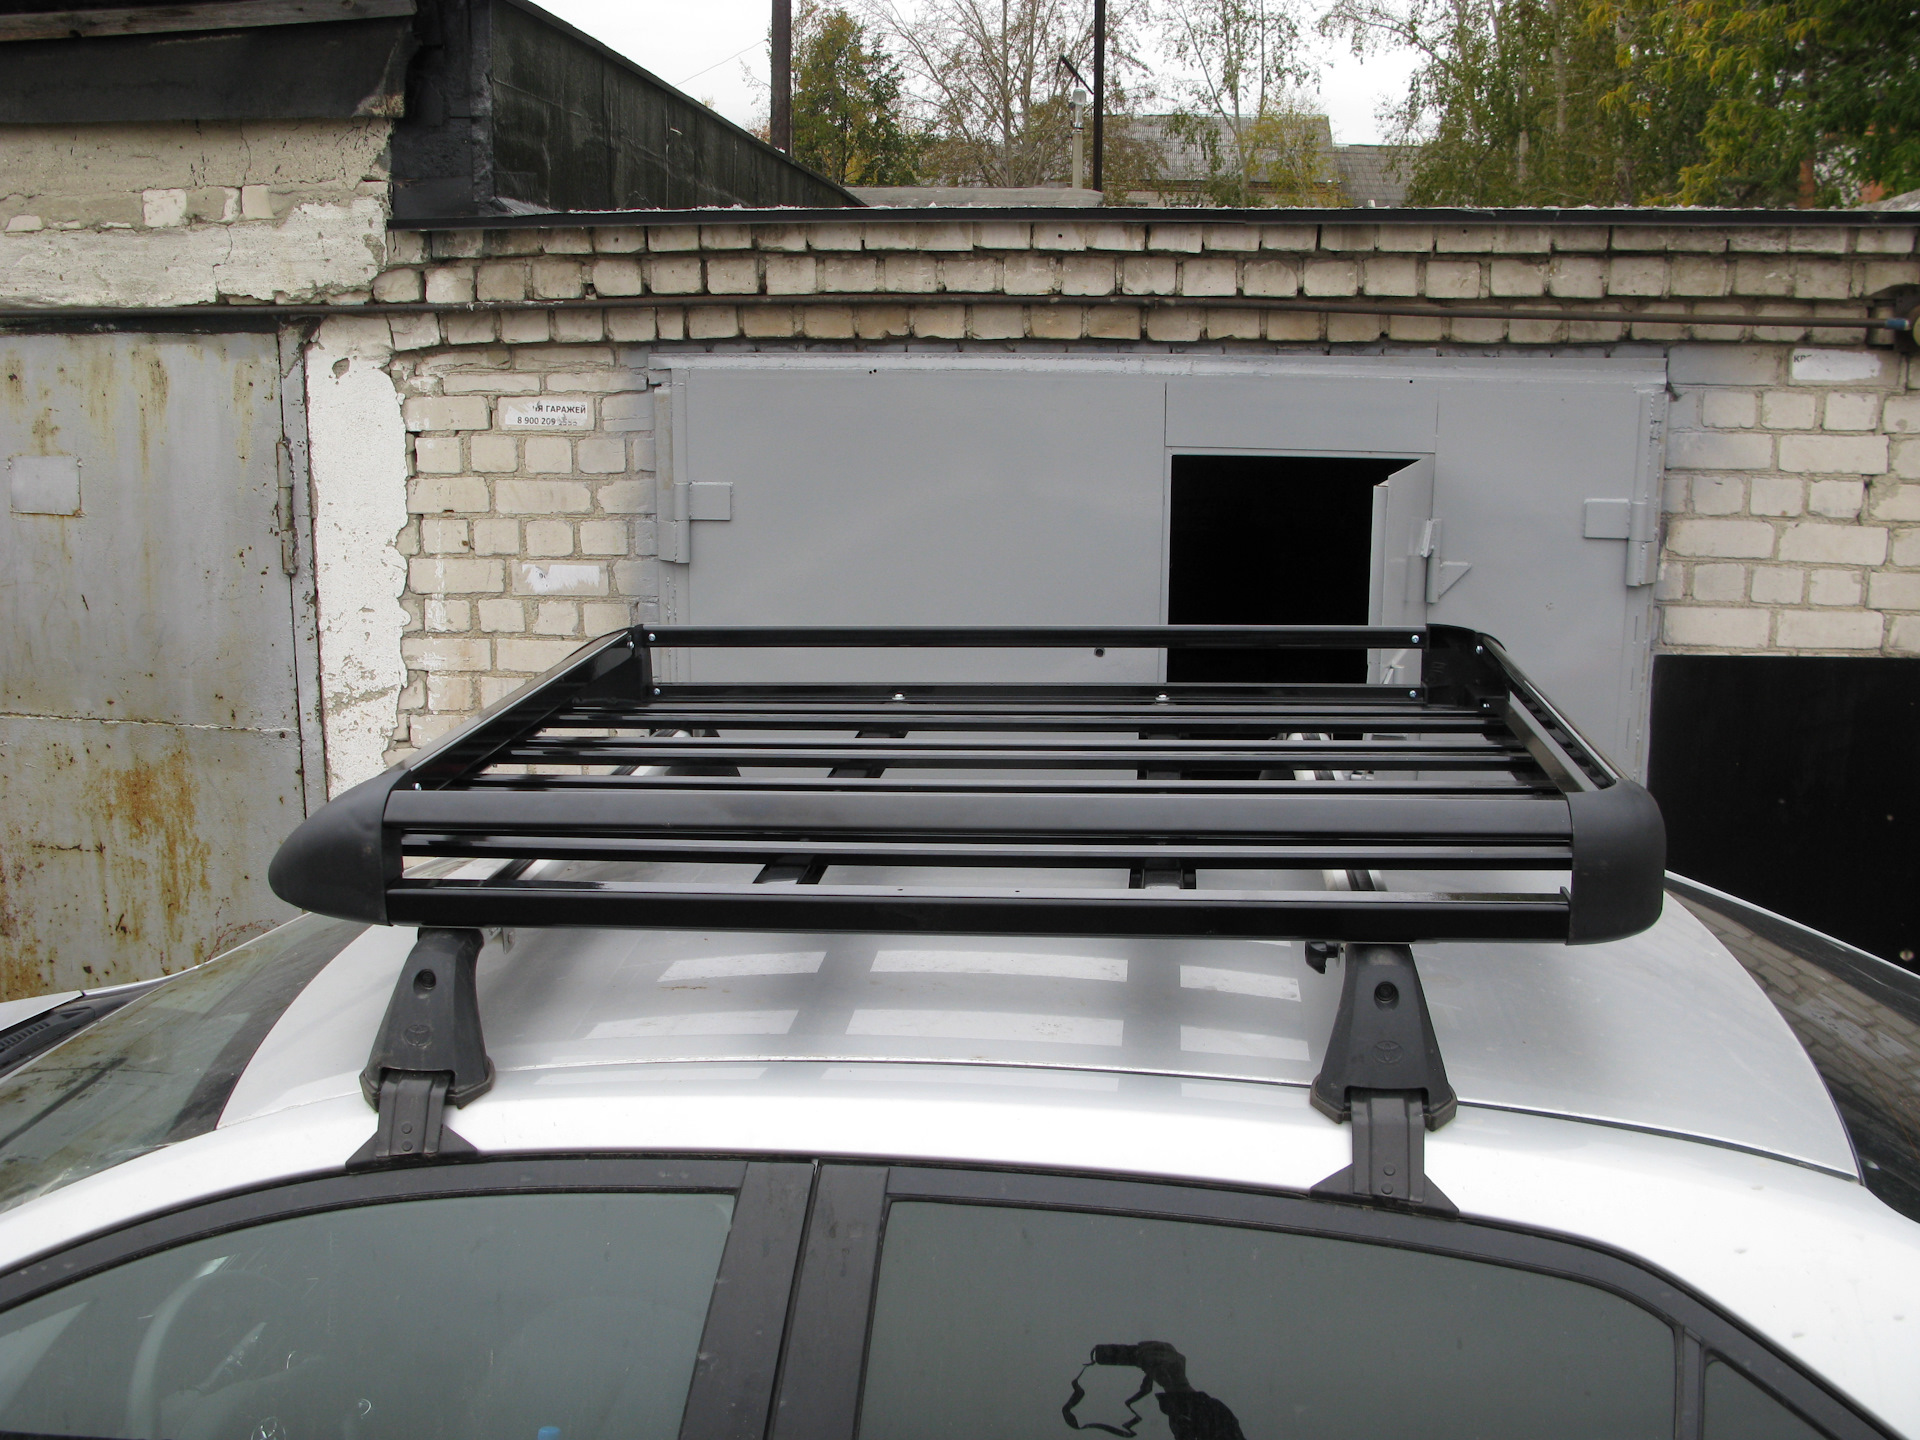 Прокат багажников. Багажник на крышу Triton. Багажник на крышу Hino 500. Багажник на крышу Альфа 2015. Nissan DAYZ багажник на крышу.